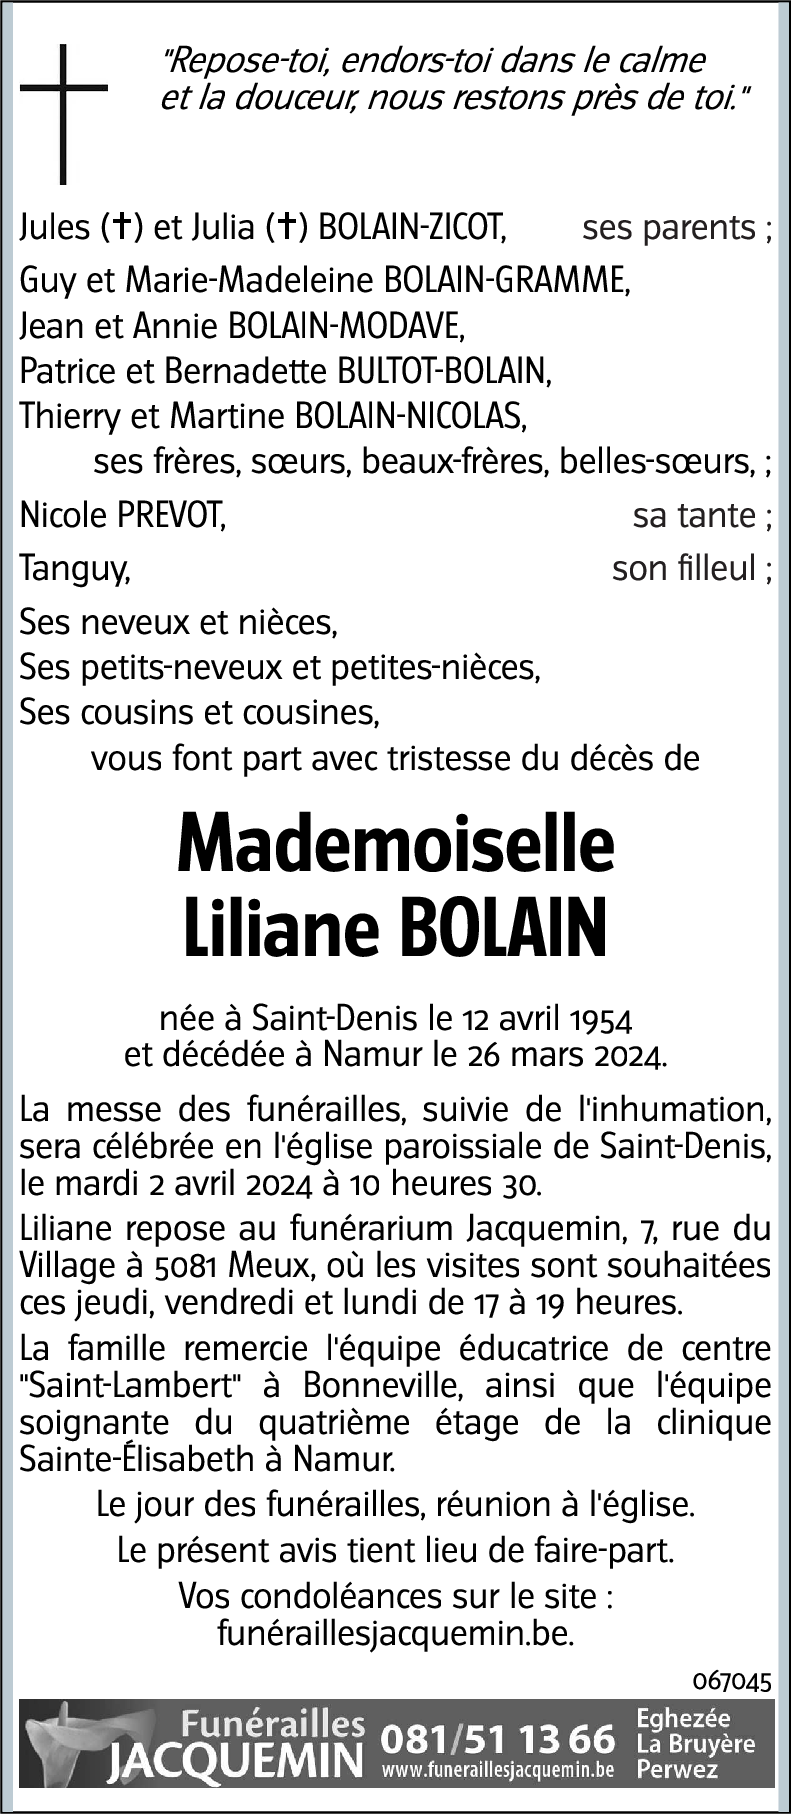 Liliane Bolain